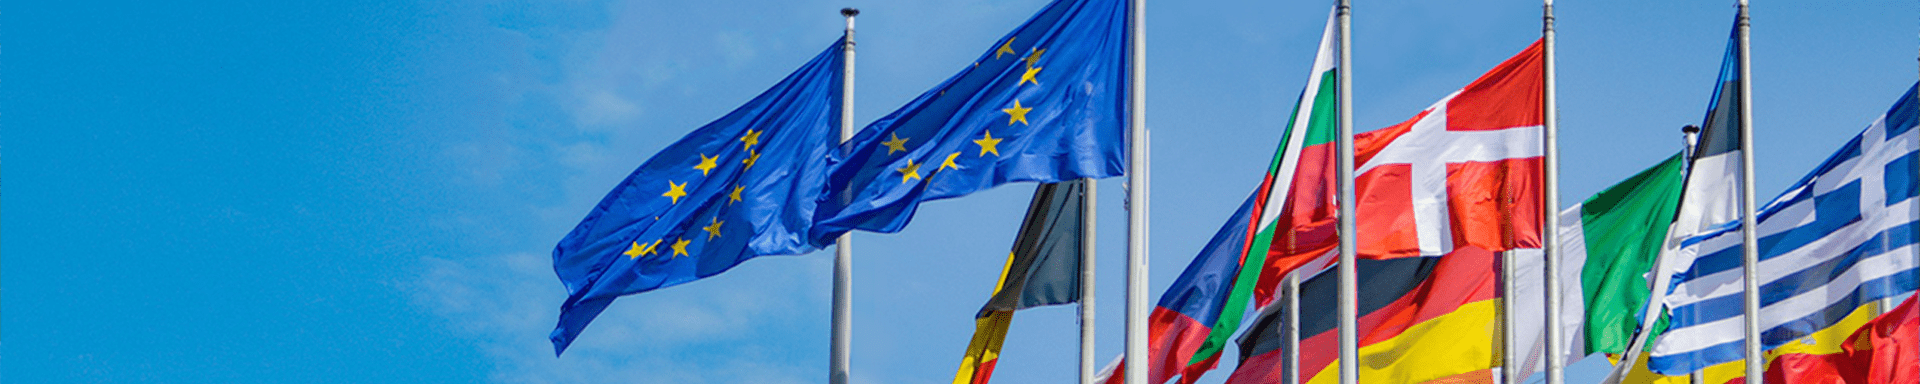 Přečtete si více ze článku SCHVÁLENO: Zpráva o naplňování úkolů spojených s předsednictvím ČR v Radě EU